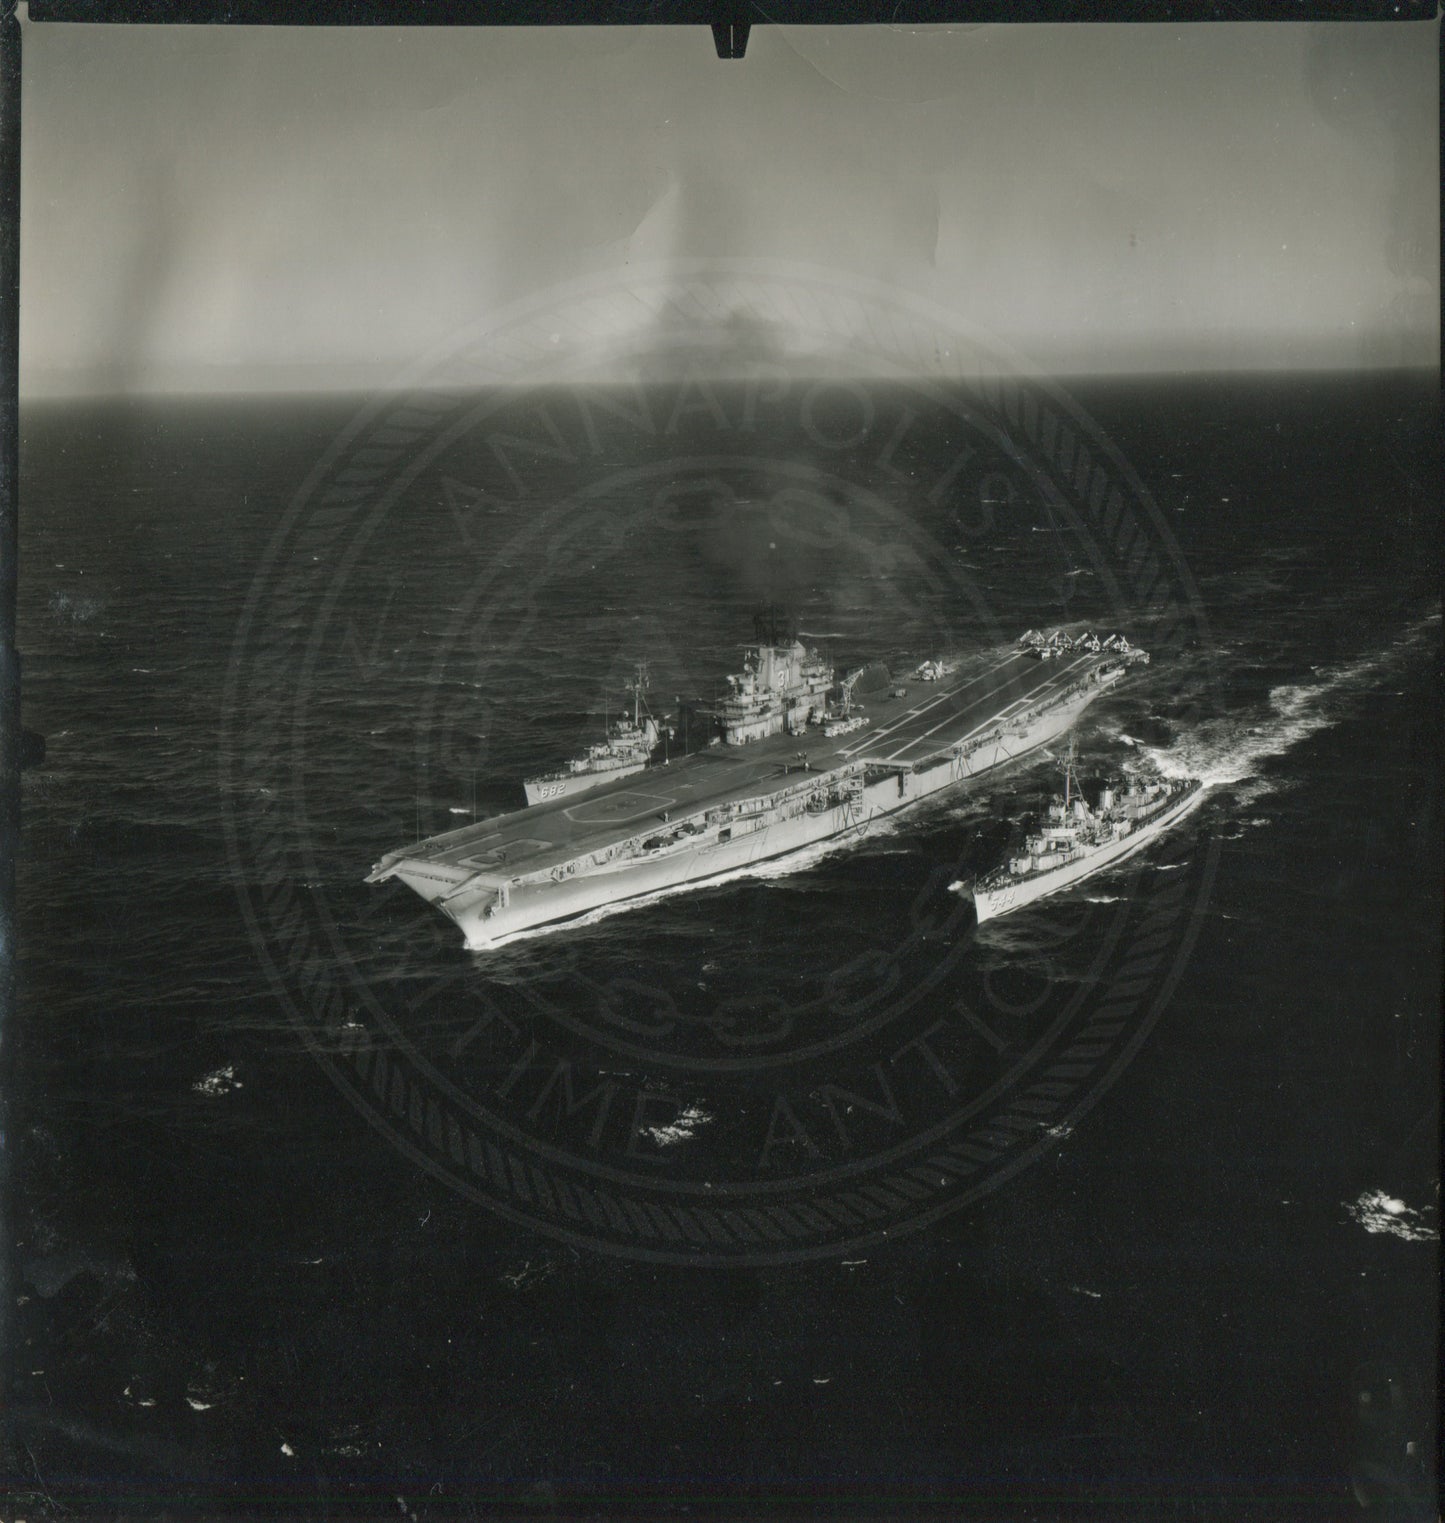 USS Bon Homme Richard (CV-31) I